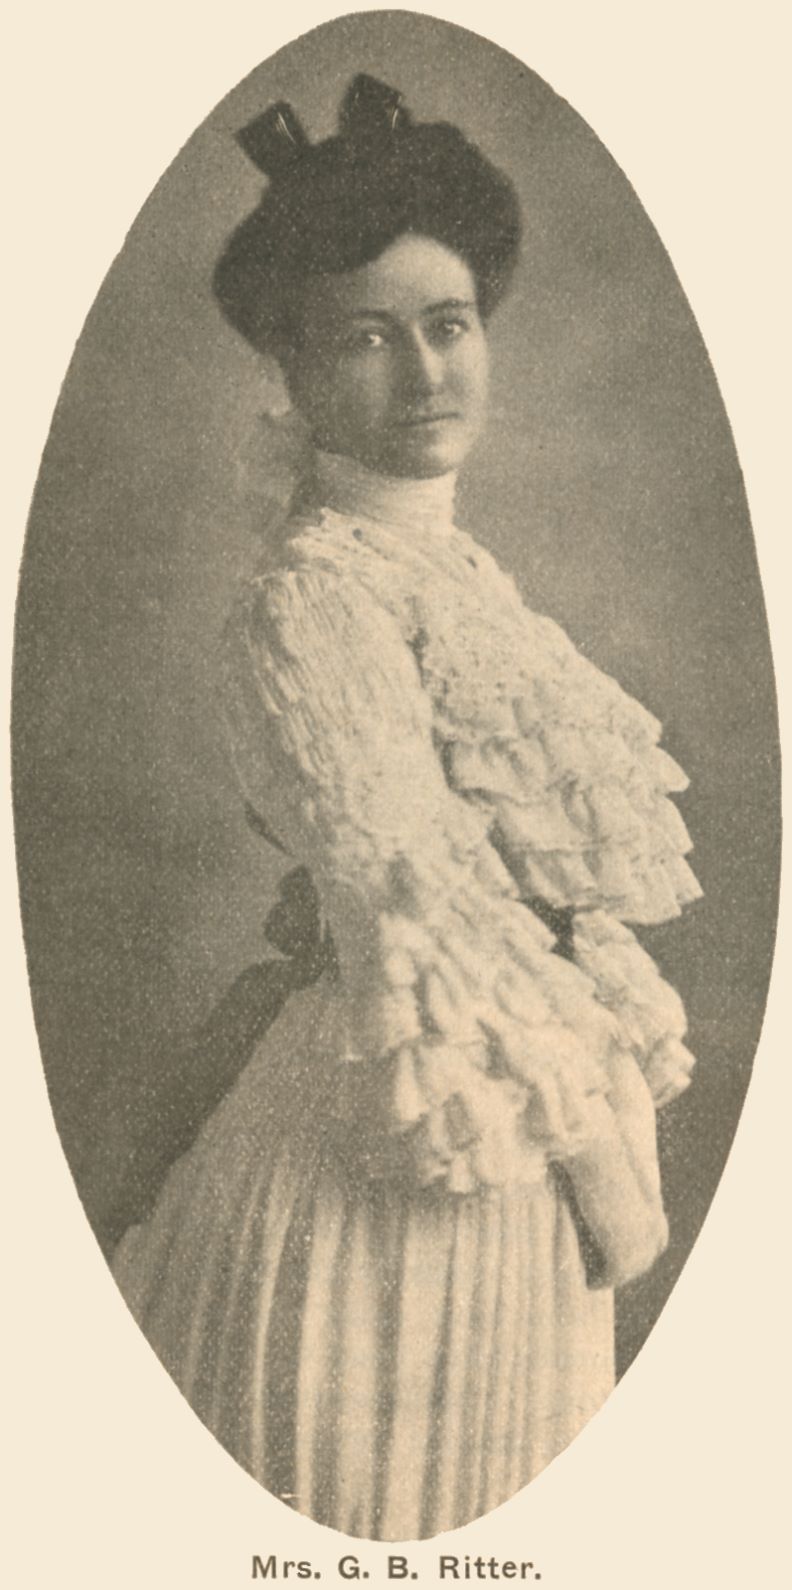 Image of Mrs. G. B. Ritter